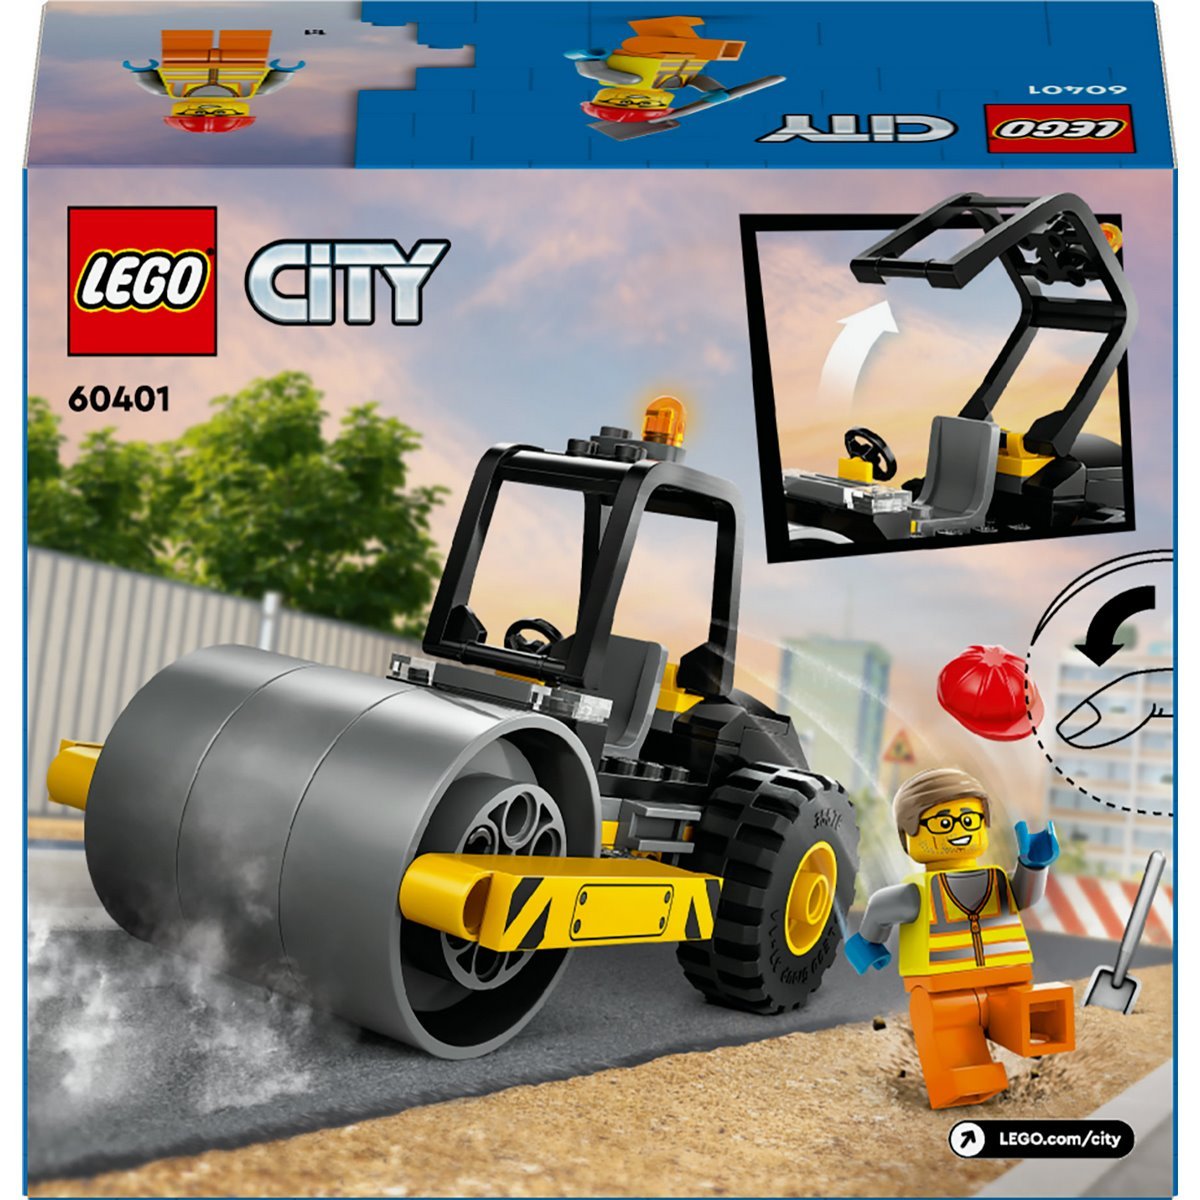 Le rouleau compresseur de chantier Lego City 60401 - La Grande Récré